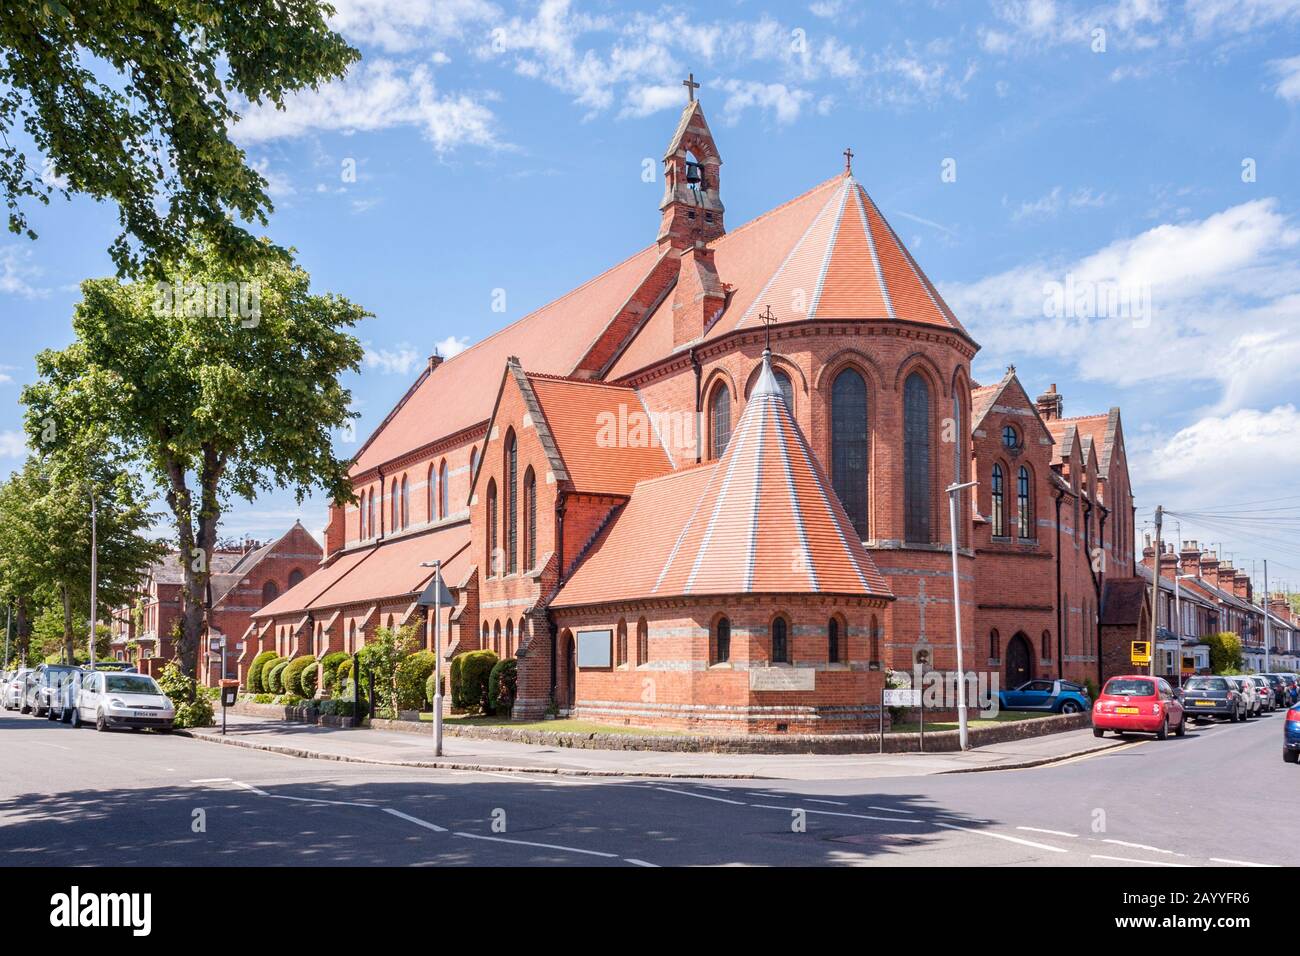 Église Saint Luke de CoFE, Reading, Berkshire, Angleterre, GB, Royaume-Uni Banque D'Images